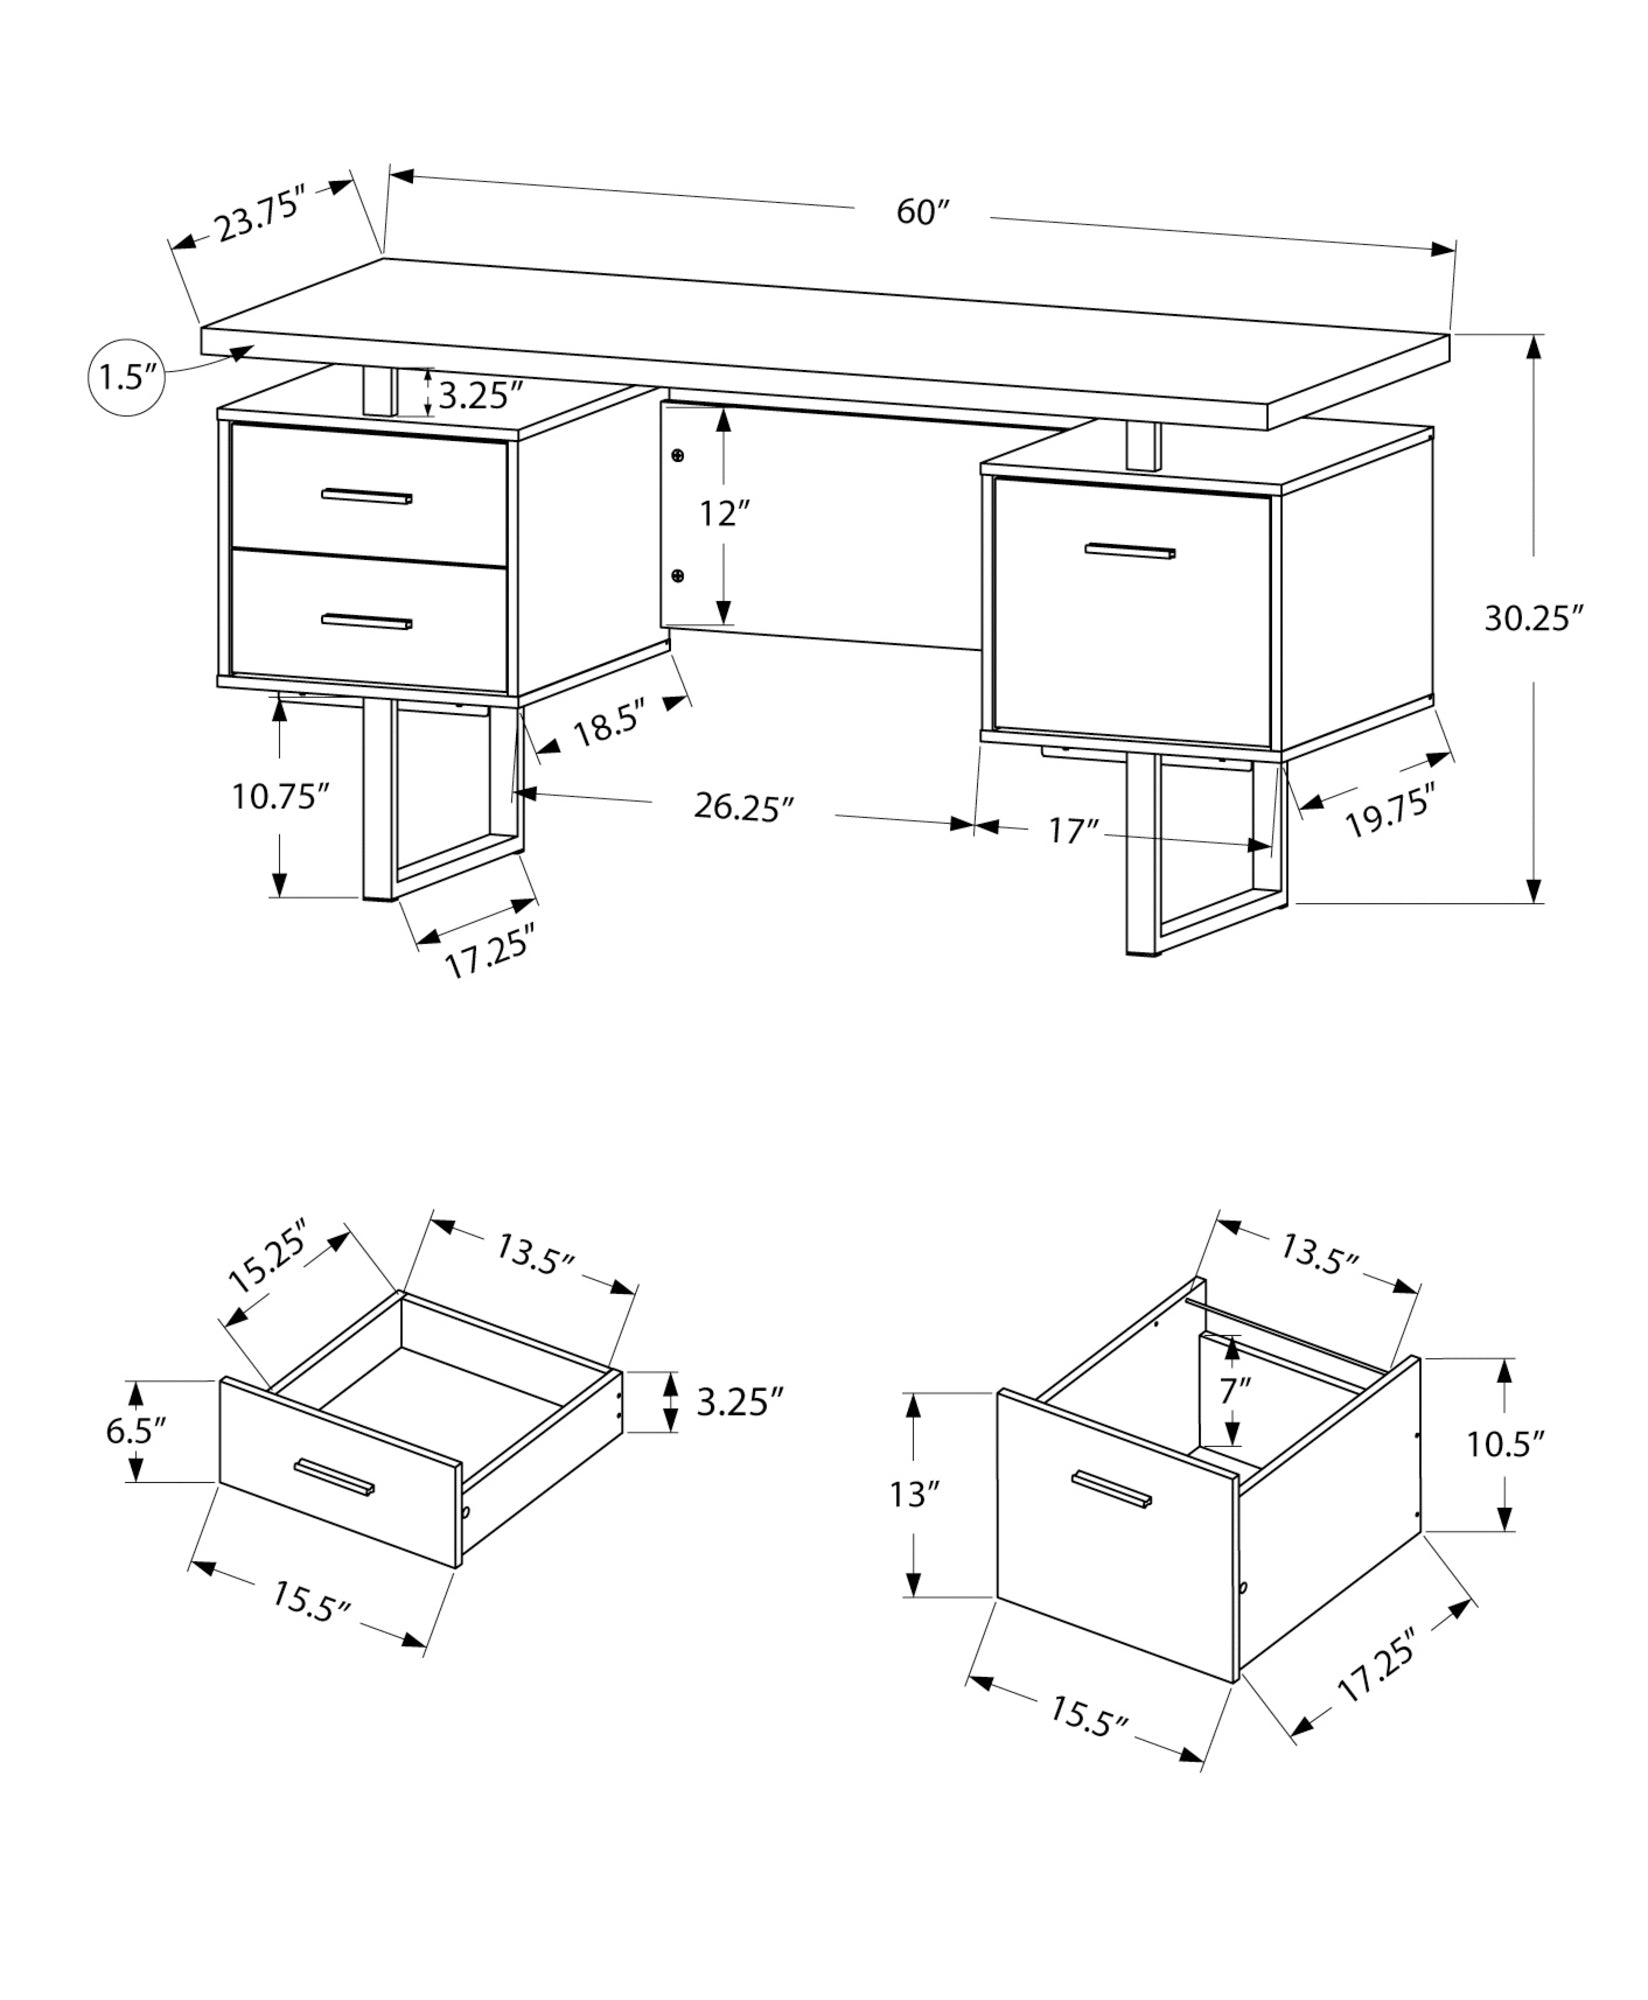 Computer Desk - 60L / Black / Grey Top / Black Metal